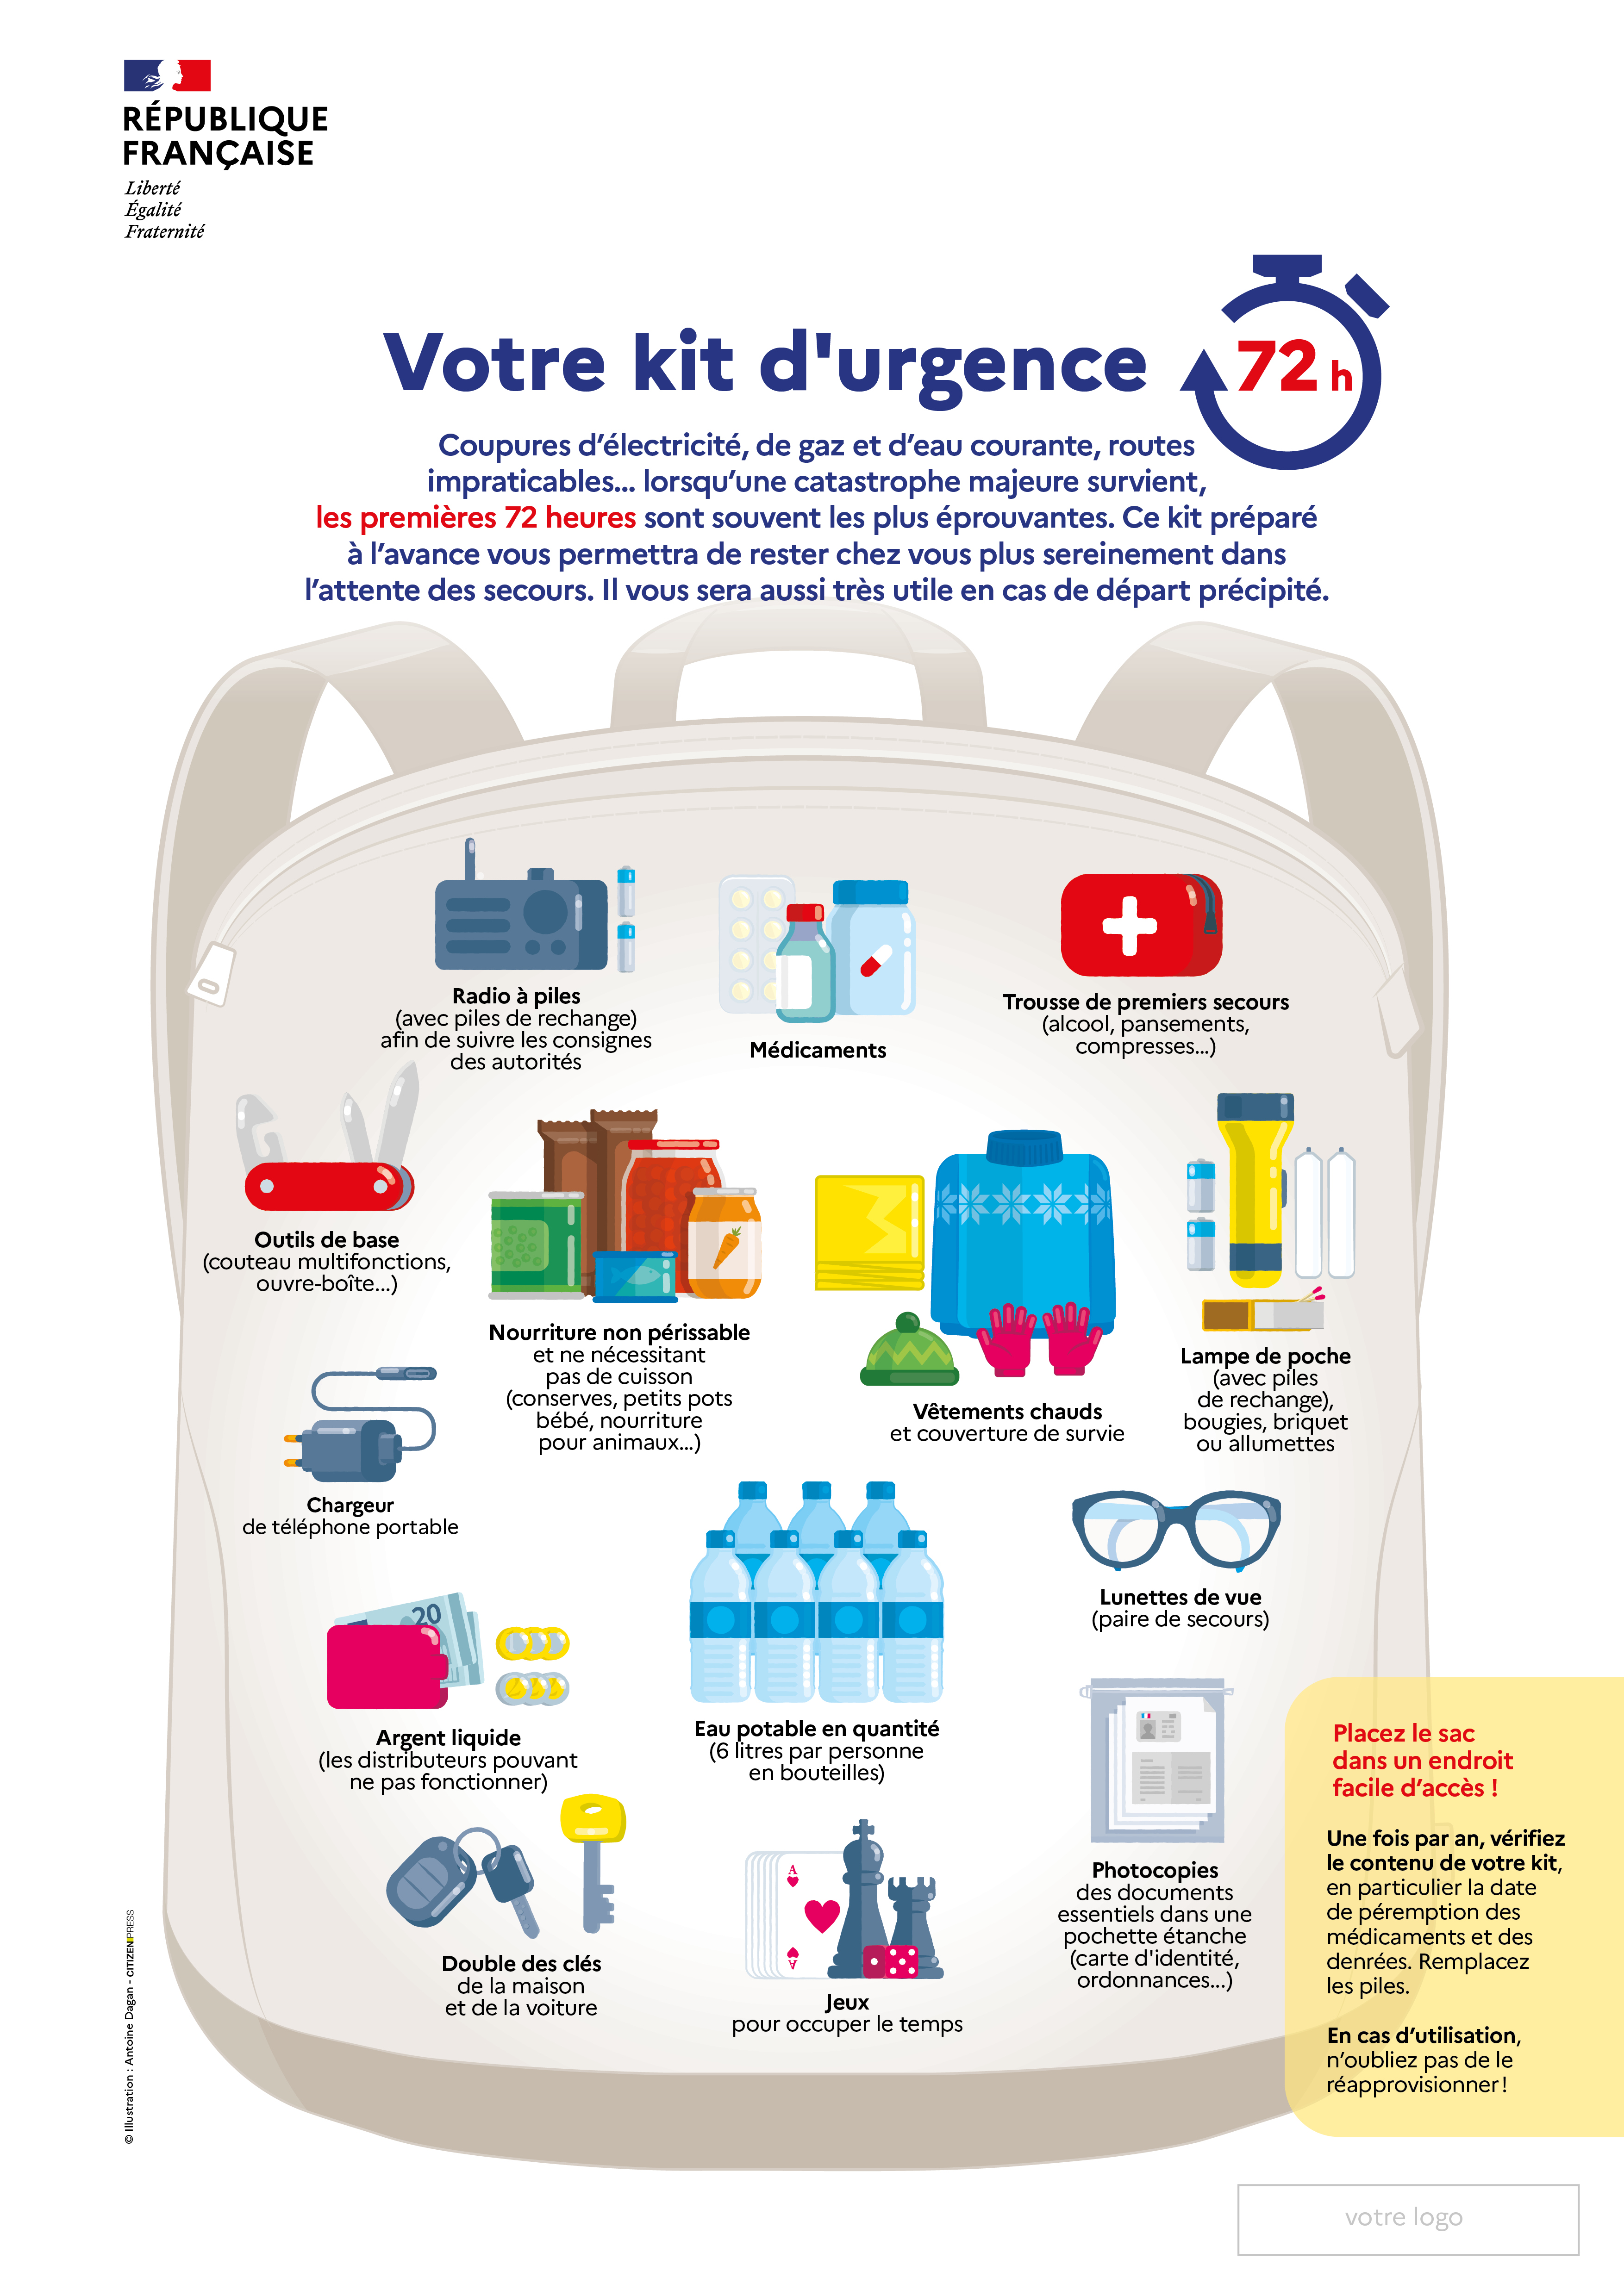 Illustration d'un sac montrant tous les éléments à préparer dans son kit d’urgence 72h.